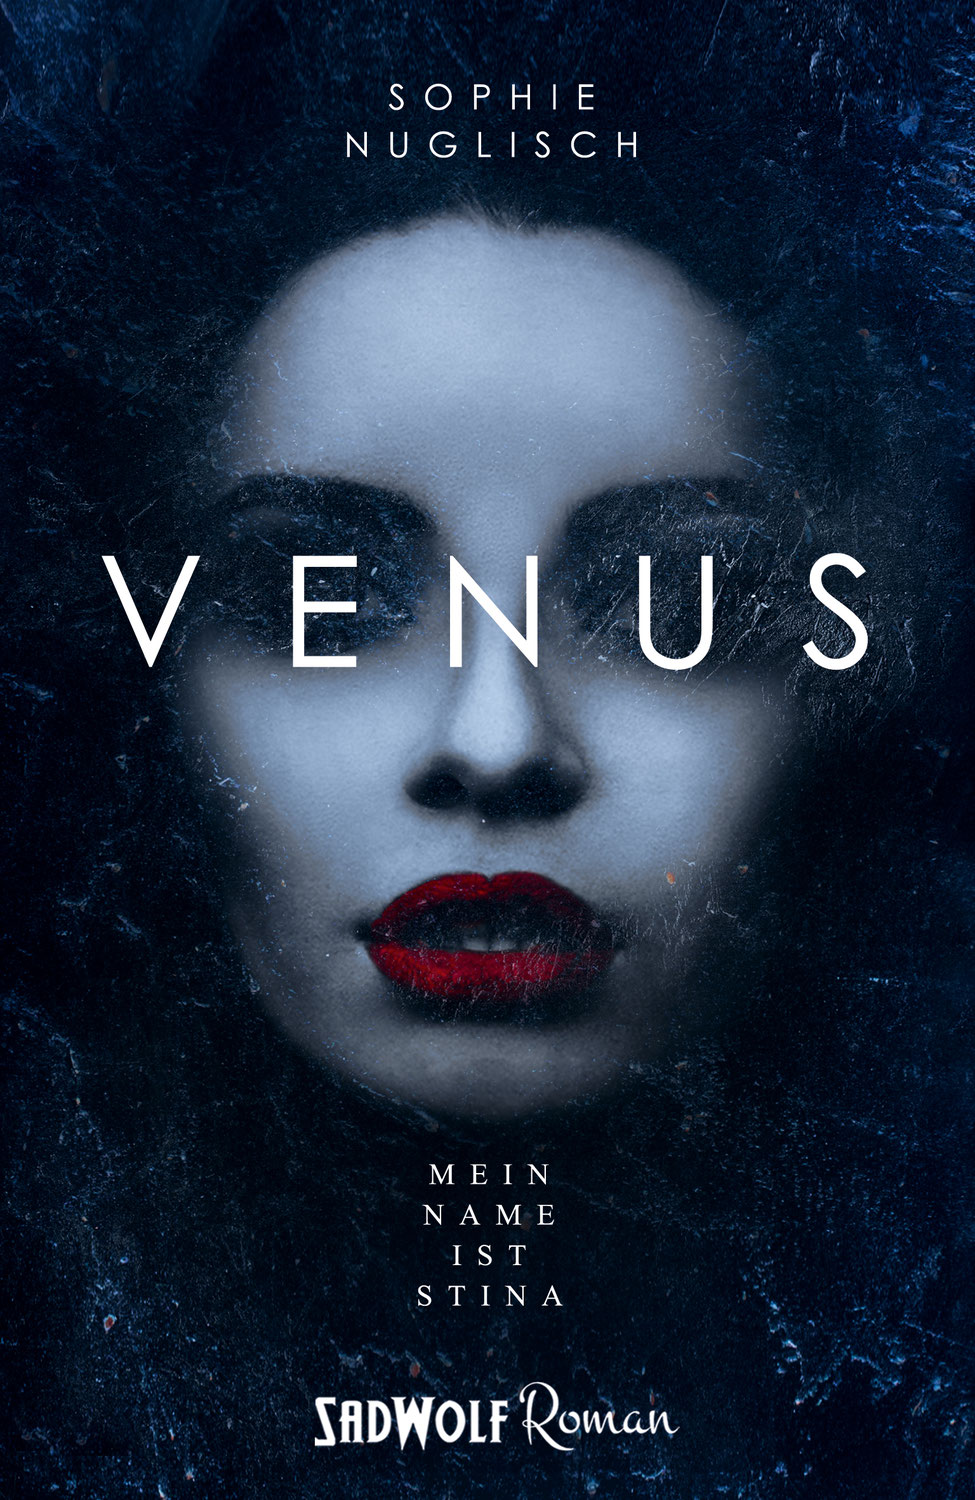 Rezension zu "Venus" von Sophie Nuglisch